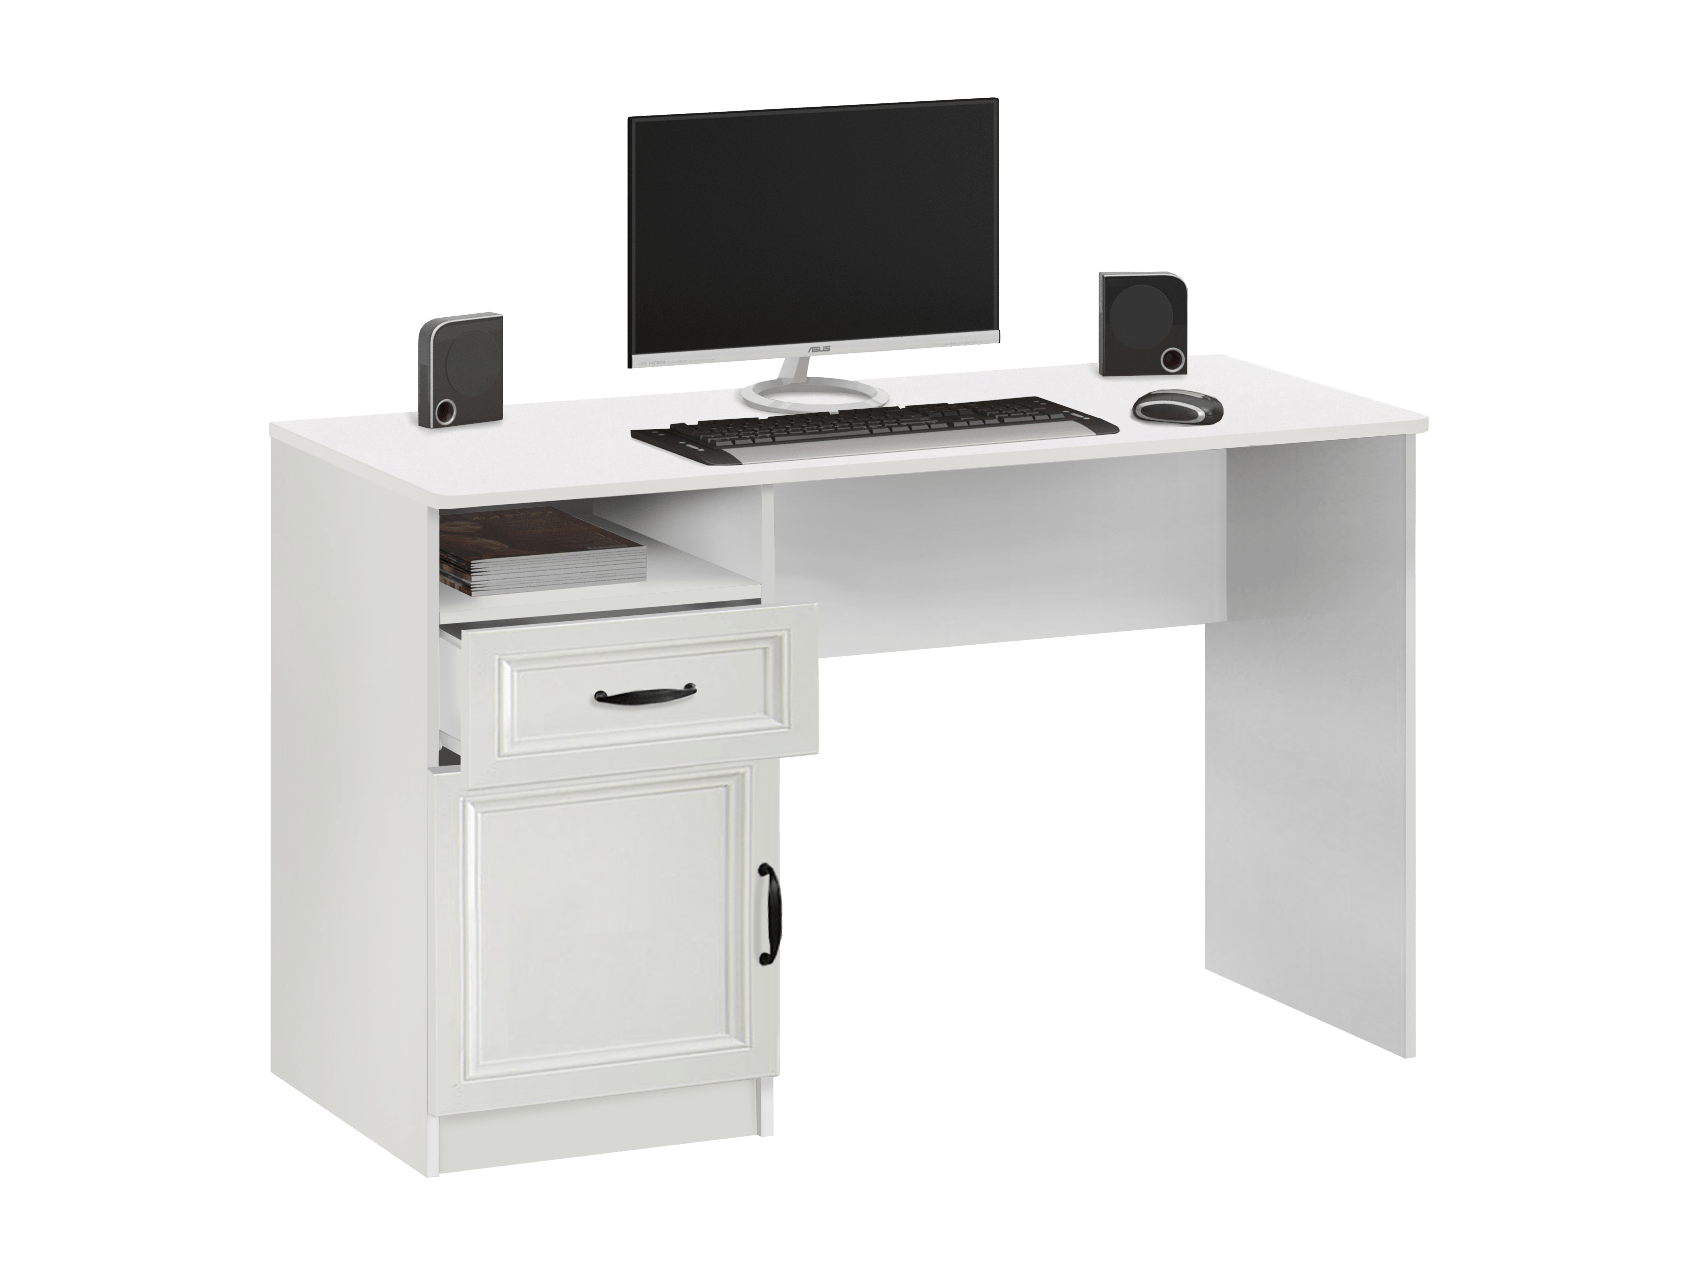 Стол компьютерный с тумбой 7.65 (Белый) Белый, ЛДСП компьютерный стол с полным хранением шоколадные офисные столы офисная мебель компьютерный стол